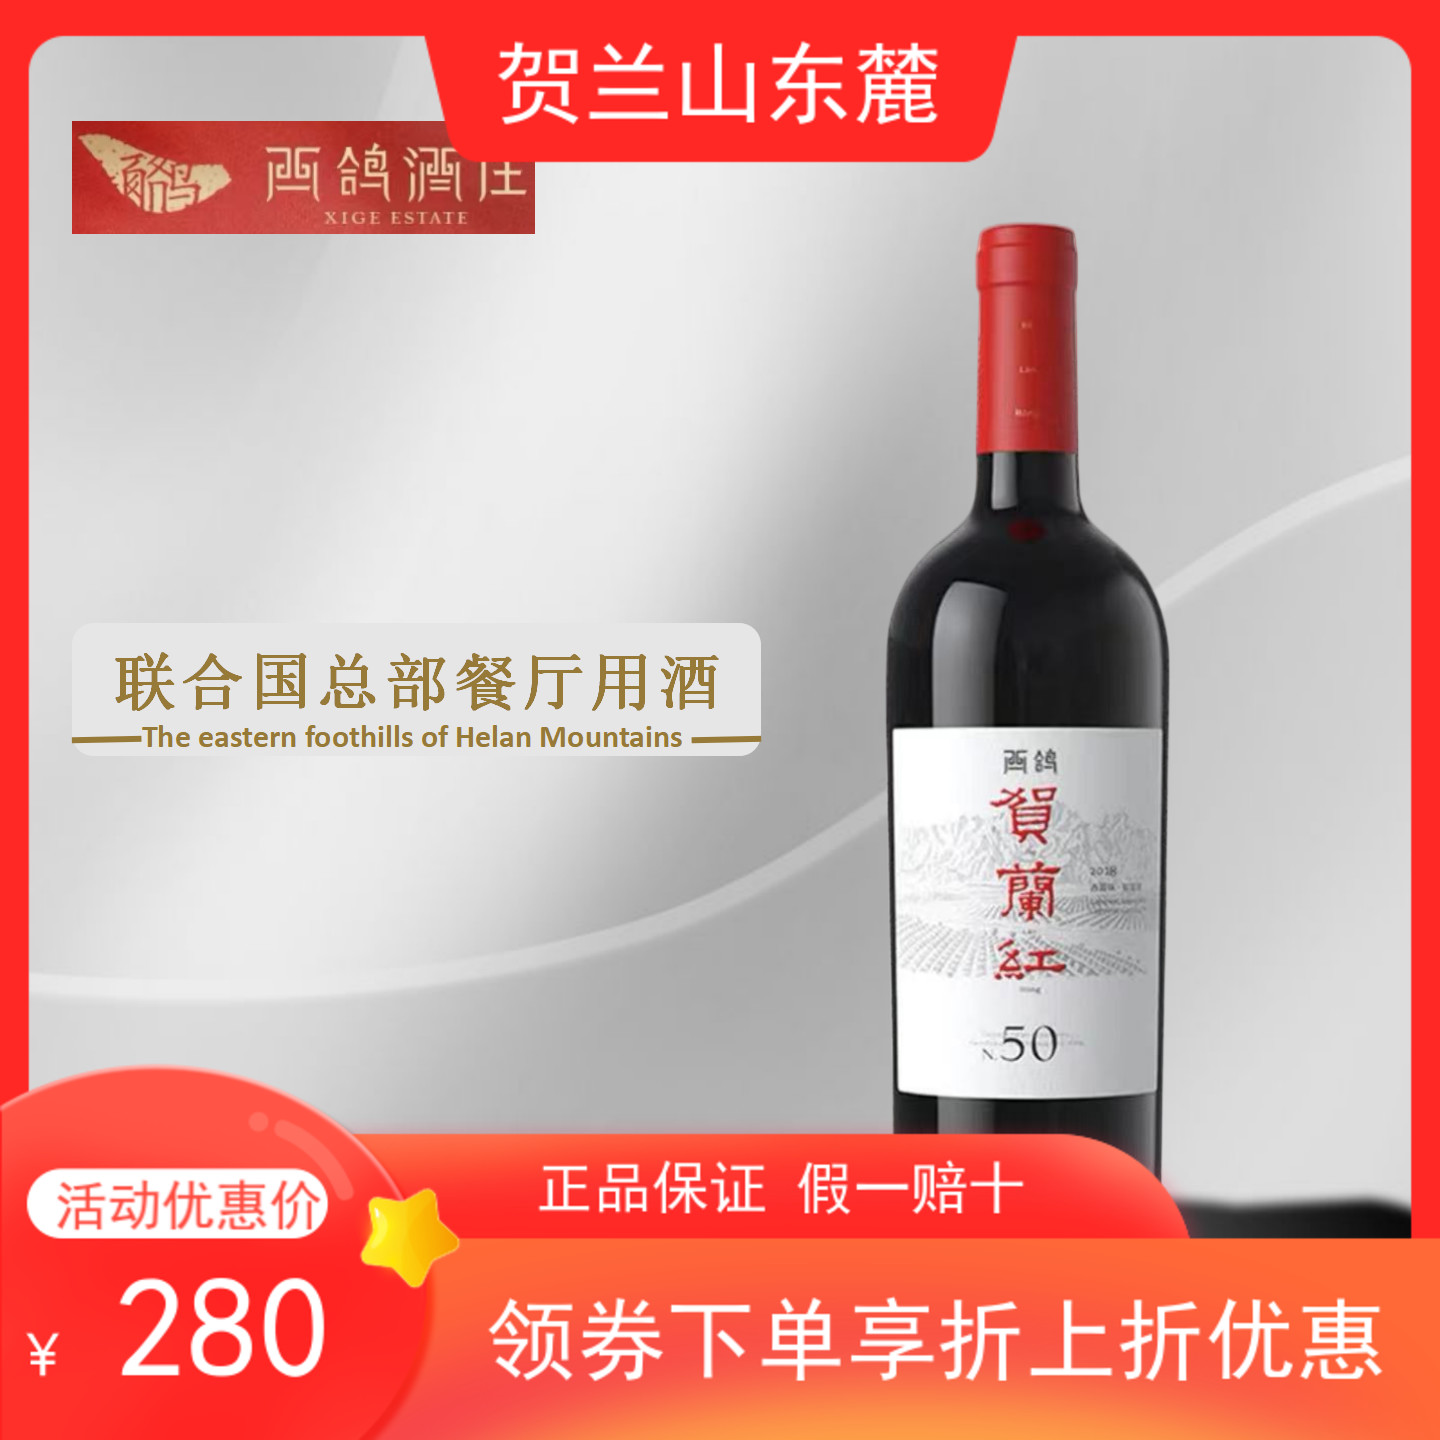 【贺兰红N50】西鸽酒庄17年贺兰红N50赤霞珠蛇龙珠混酿葡萄酒